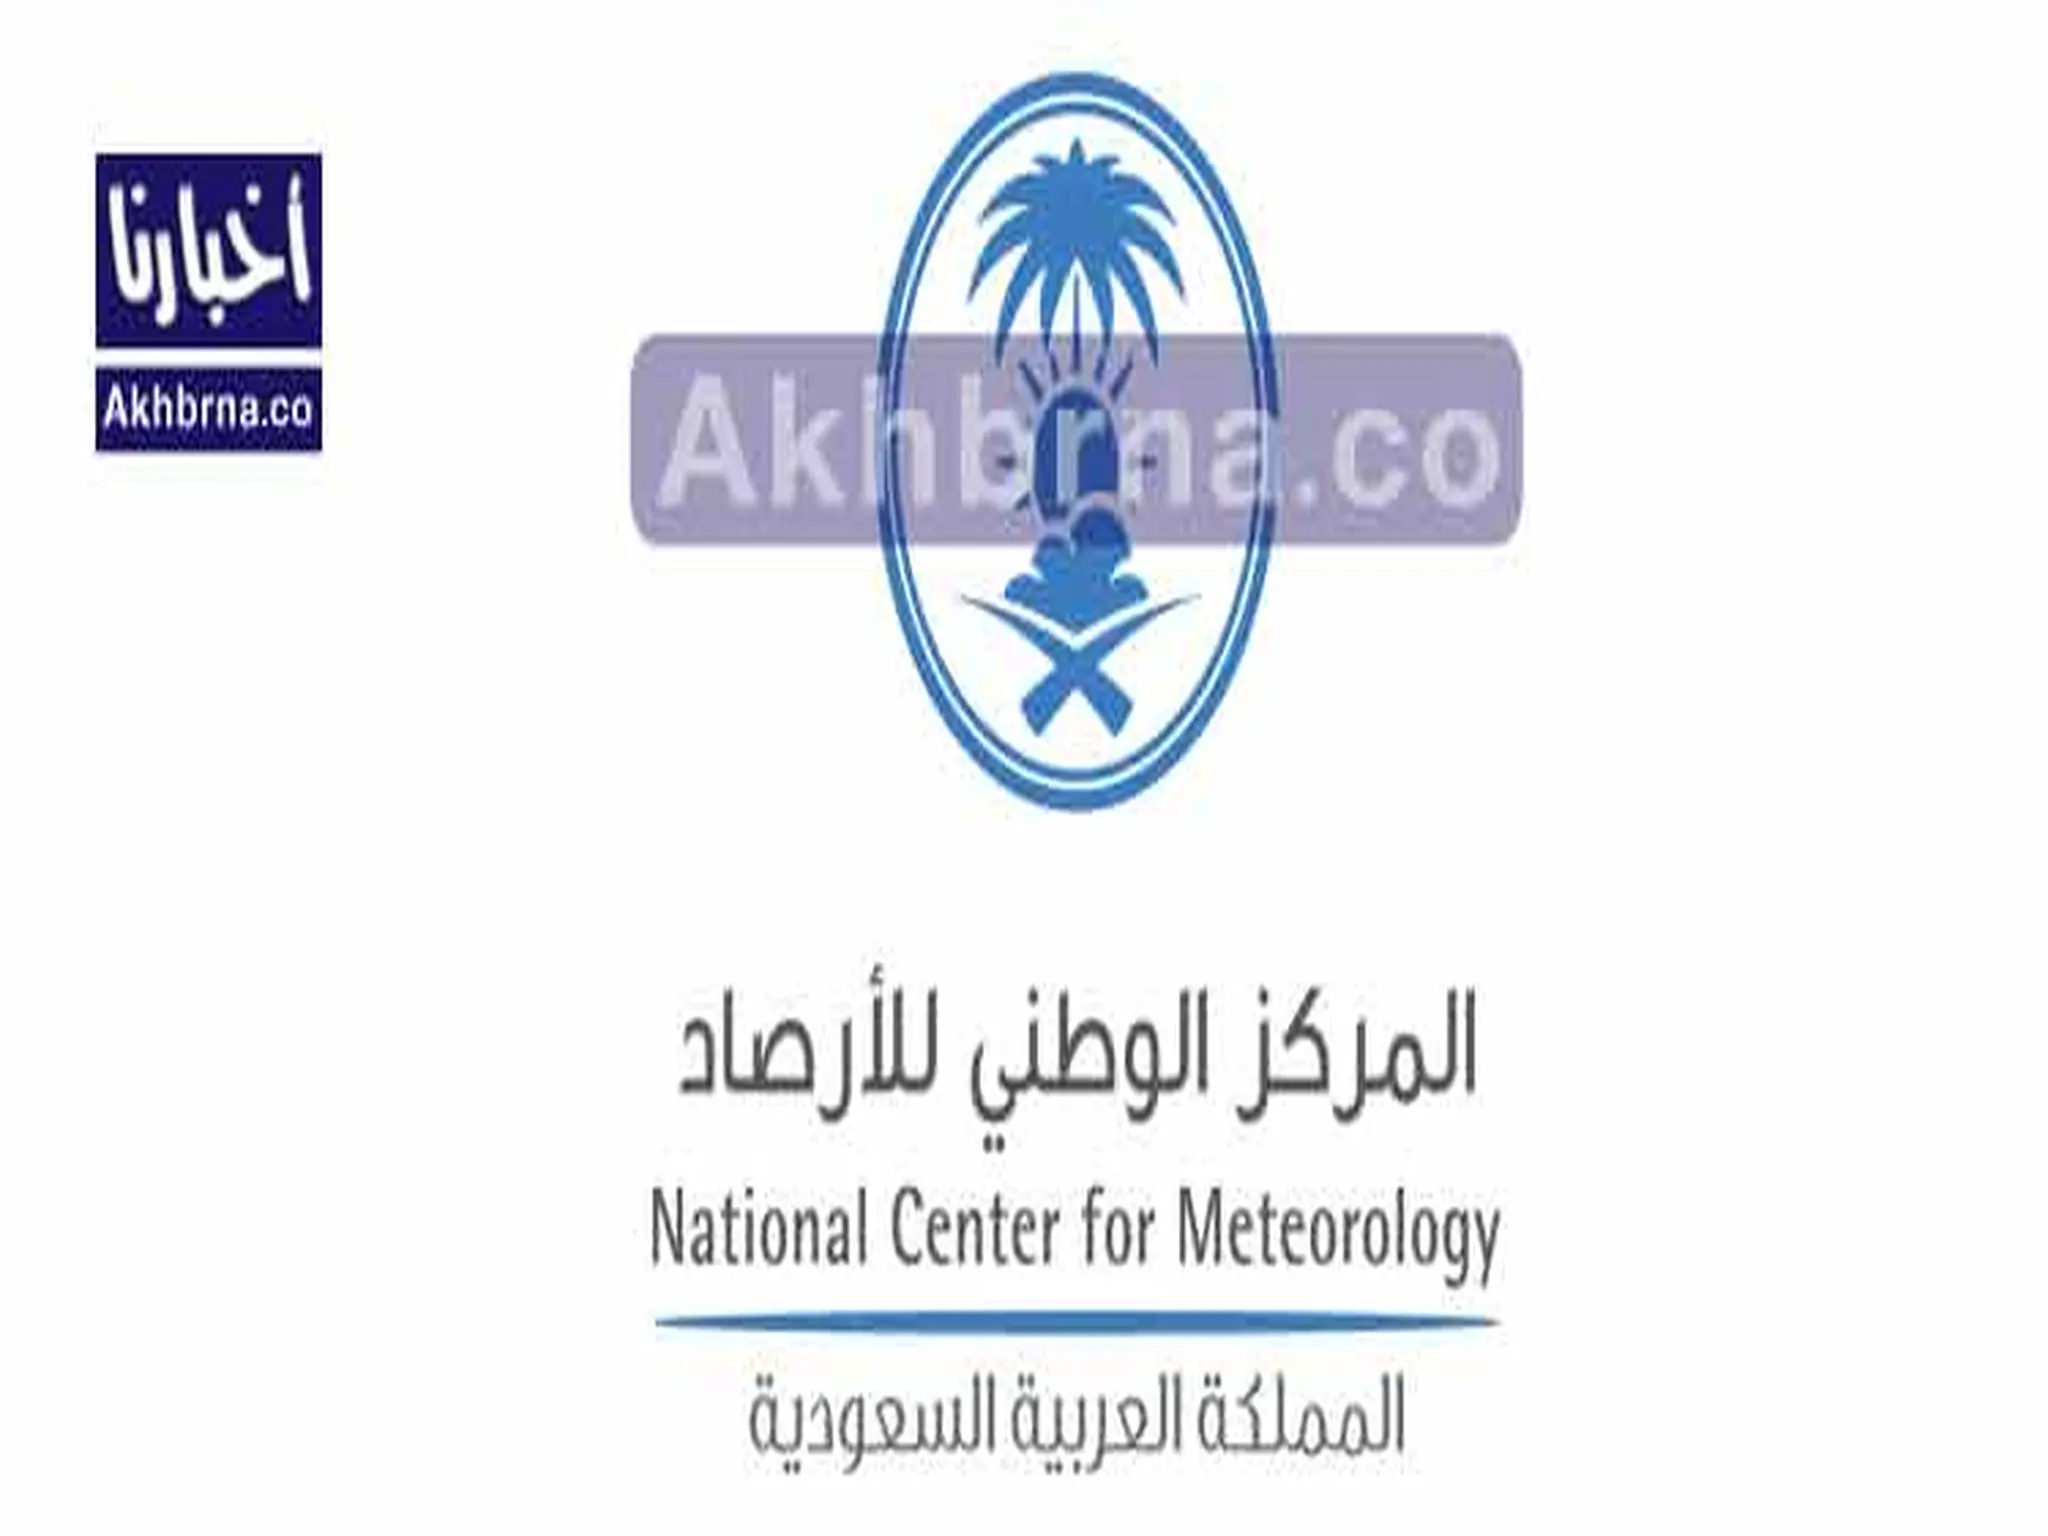 المركز الوطني للأرصاد يُحذر من رياح نشطة وأتربة مثارة على 3 مناطق بالسعودية